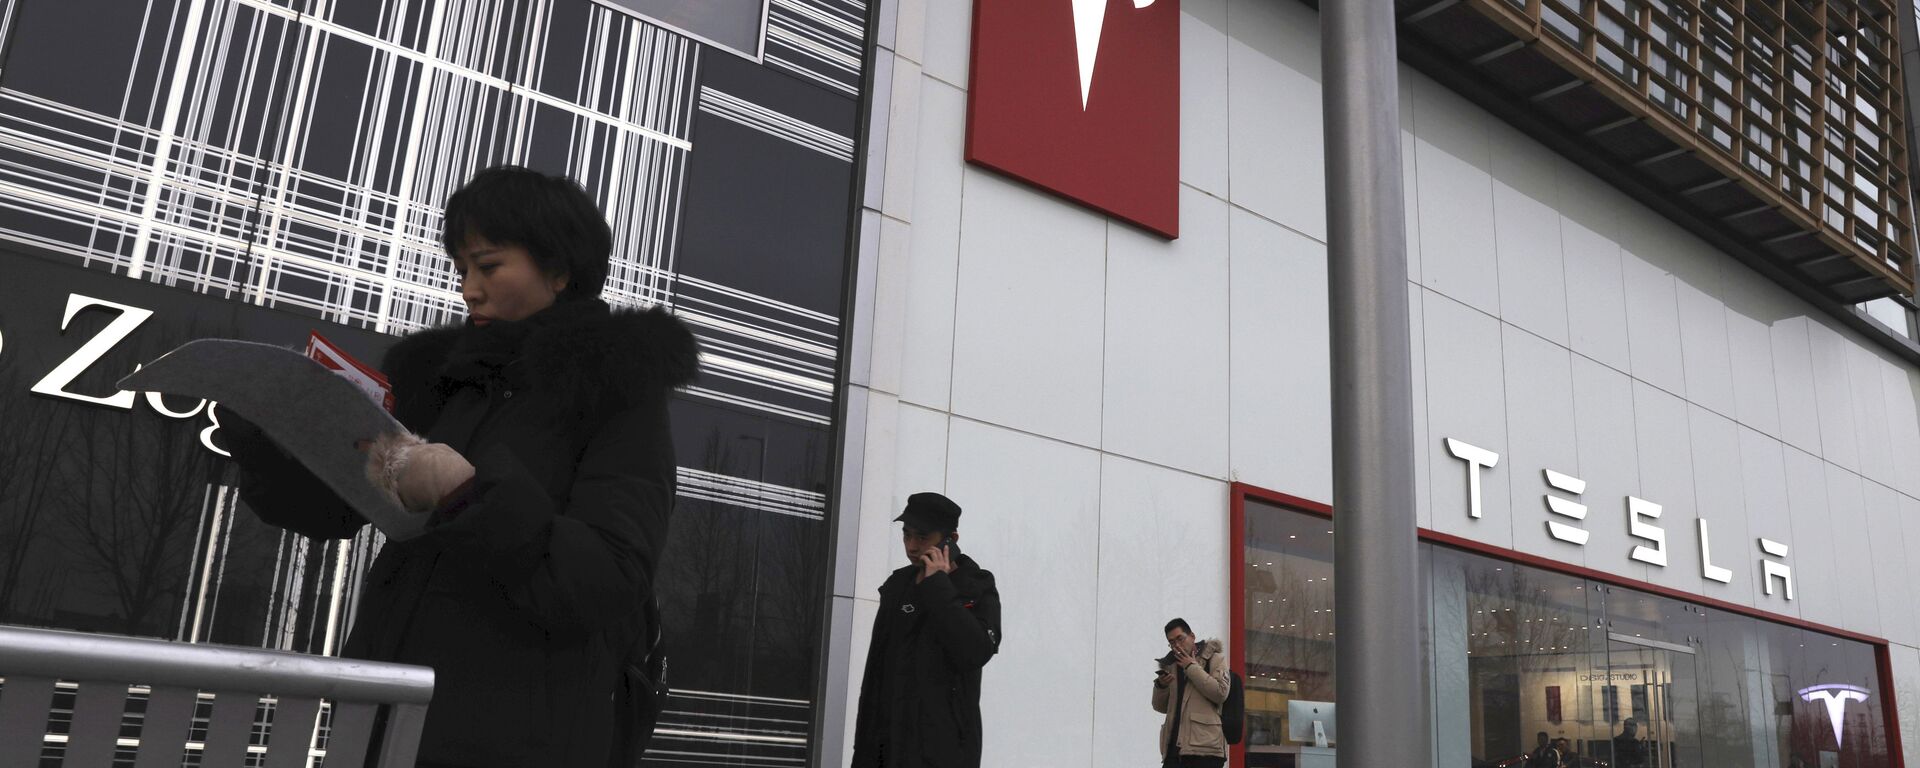 Residents walk past a Tesla store in Beijing - Sputnik International, 1920, 05.02.2021